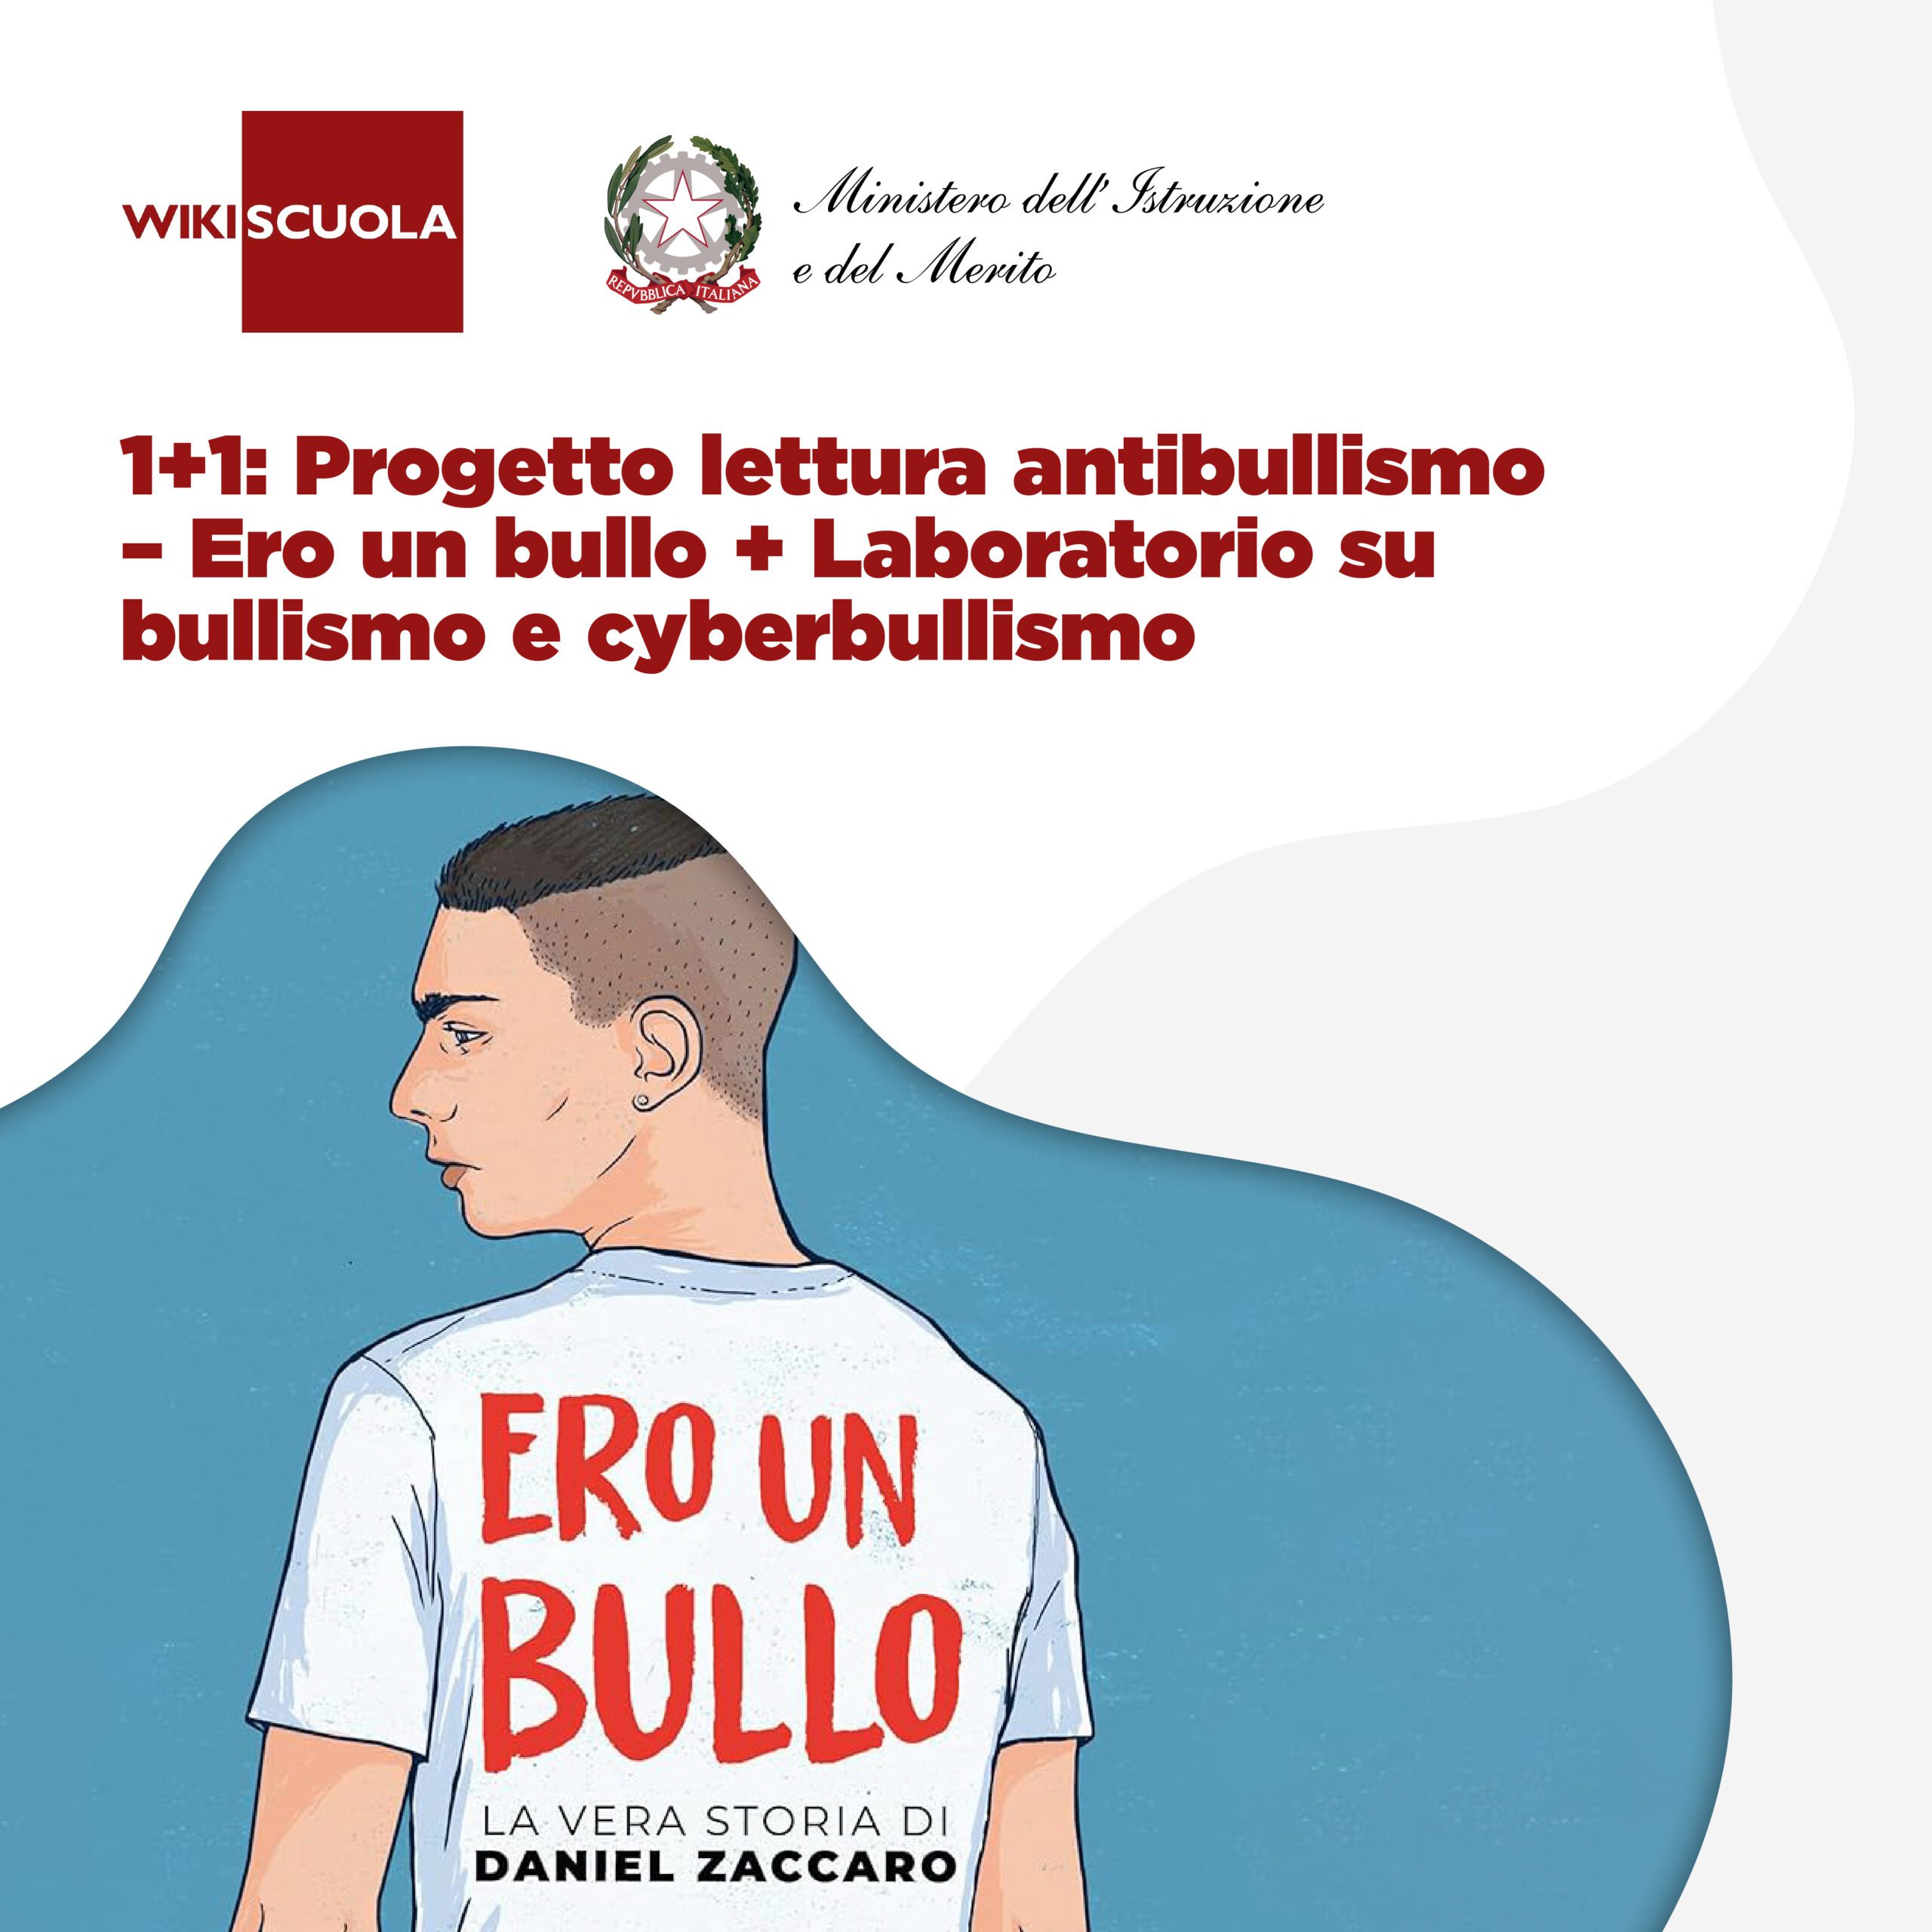 1+1: Progetto lettura antibullismo/ERO UN BULLO + Laboratorio su bullismo e  cyberbullismo (AS) - Wikiscuola